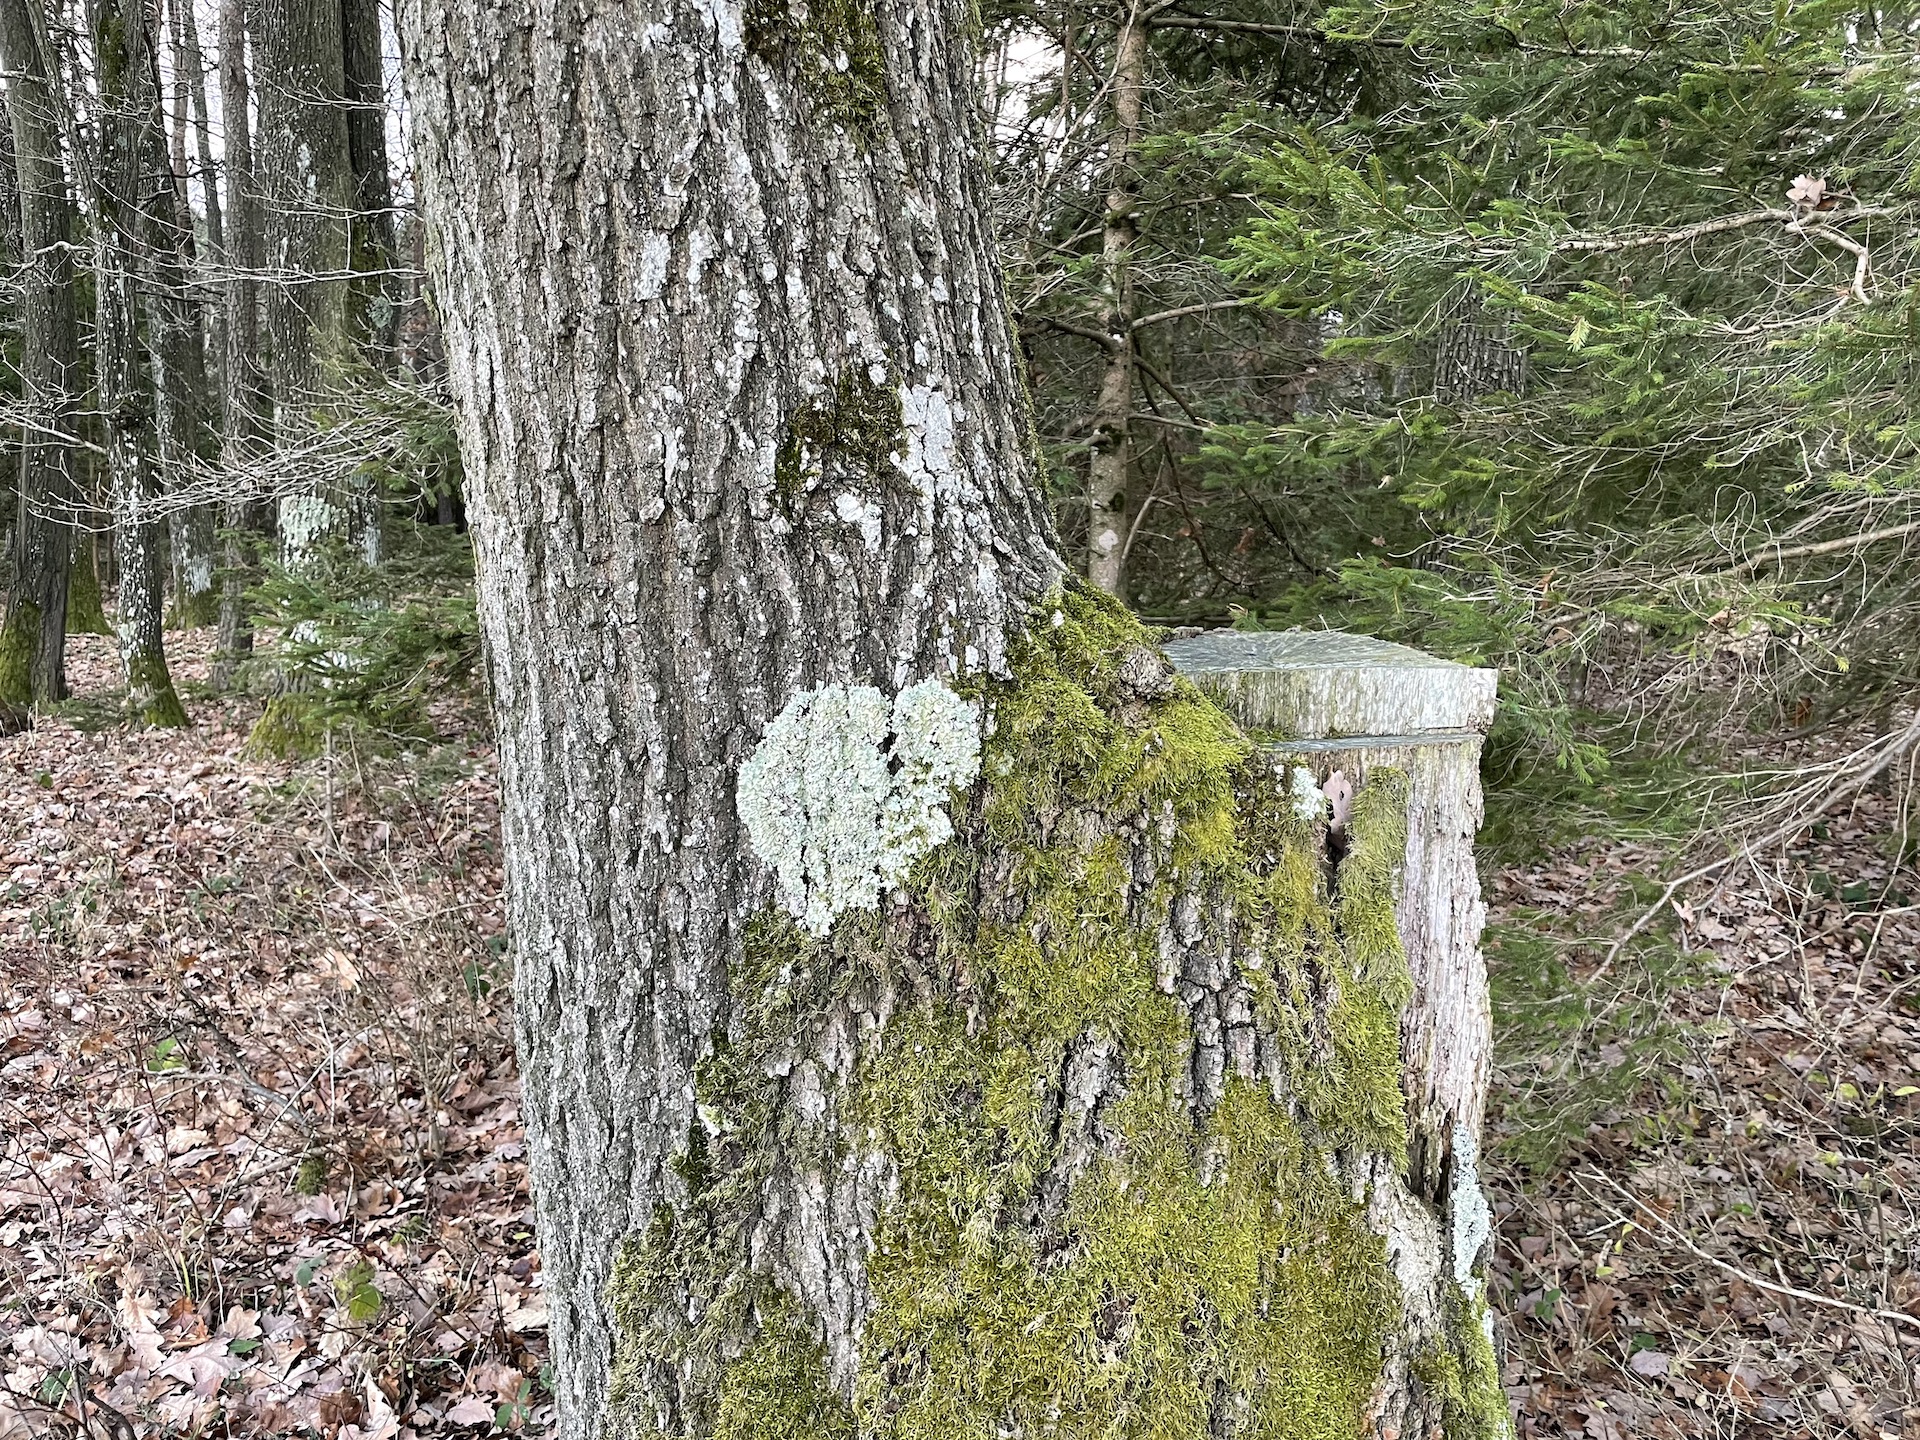 zweiteiliger Baum mit abgeschnittenem Baumstamm rechts - Moosherz am Stamm